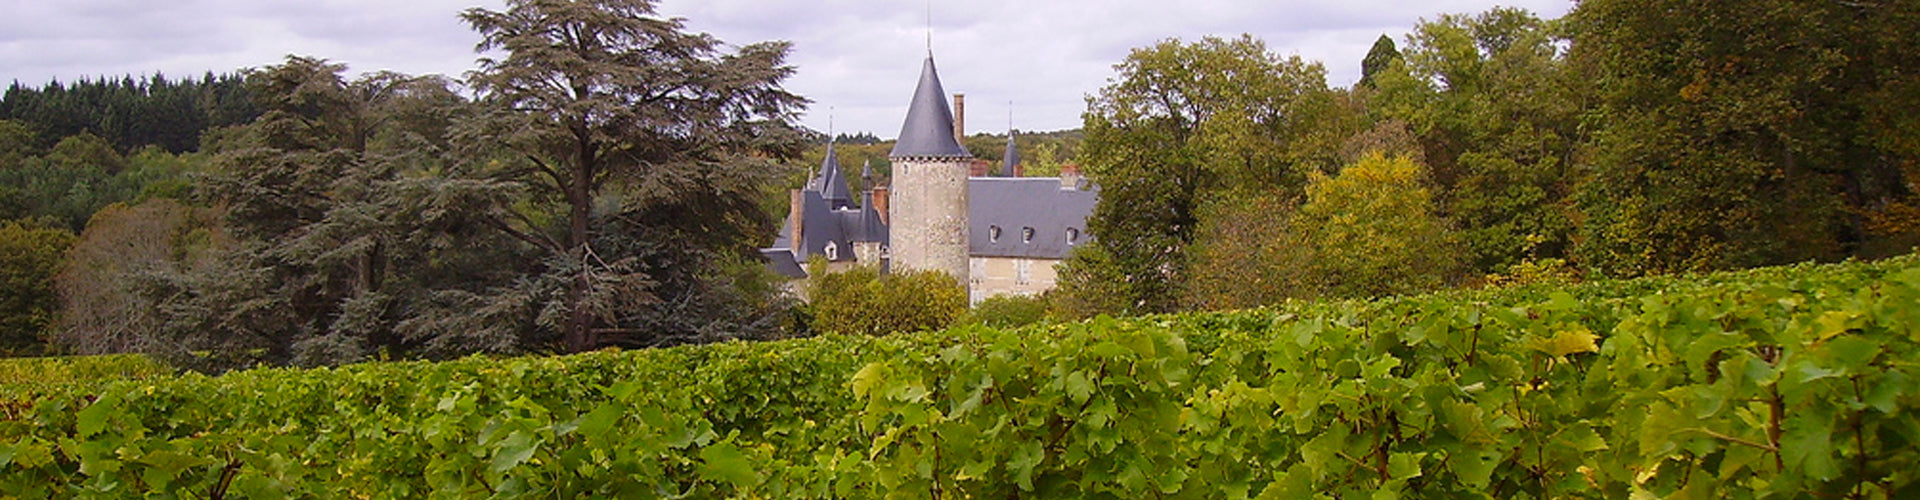 Château de Tracy Pouilly Fumé Vineyards